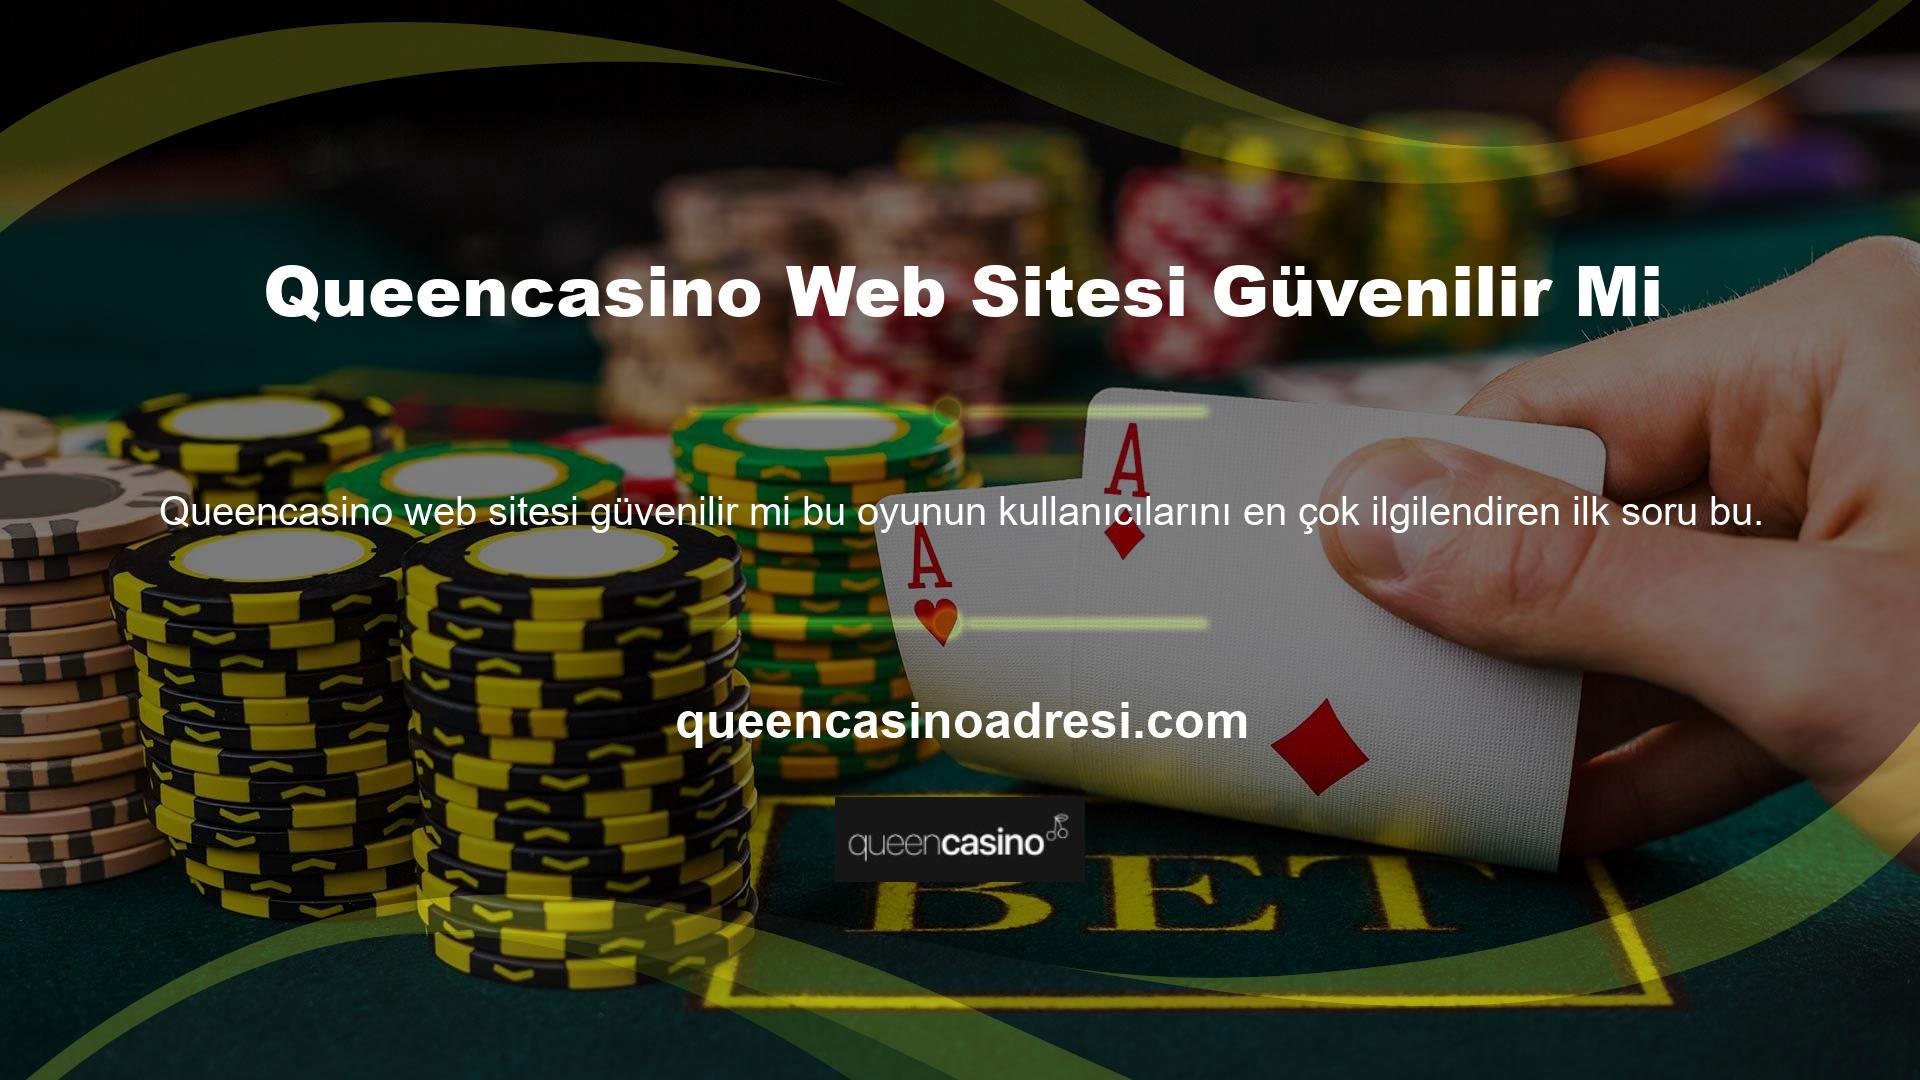 Queencasino diğer casino siteleri arasında lisanslı ve güvenilir bir sitedir